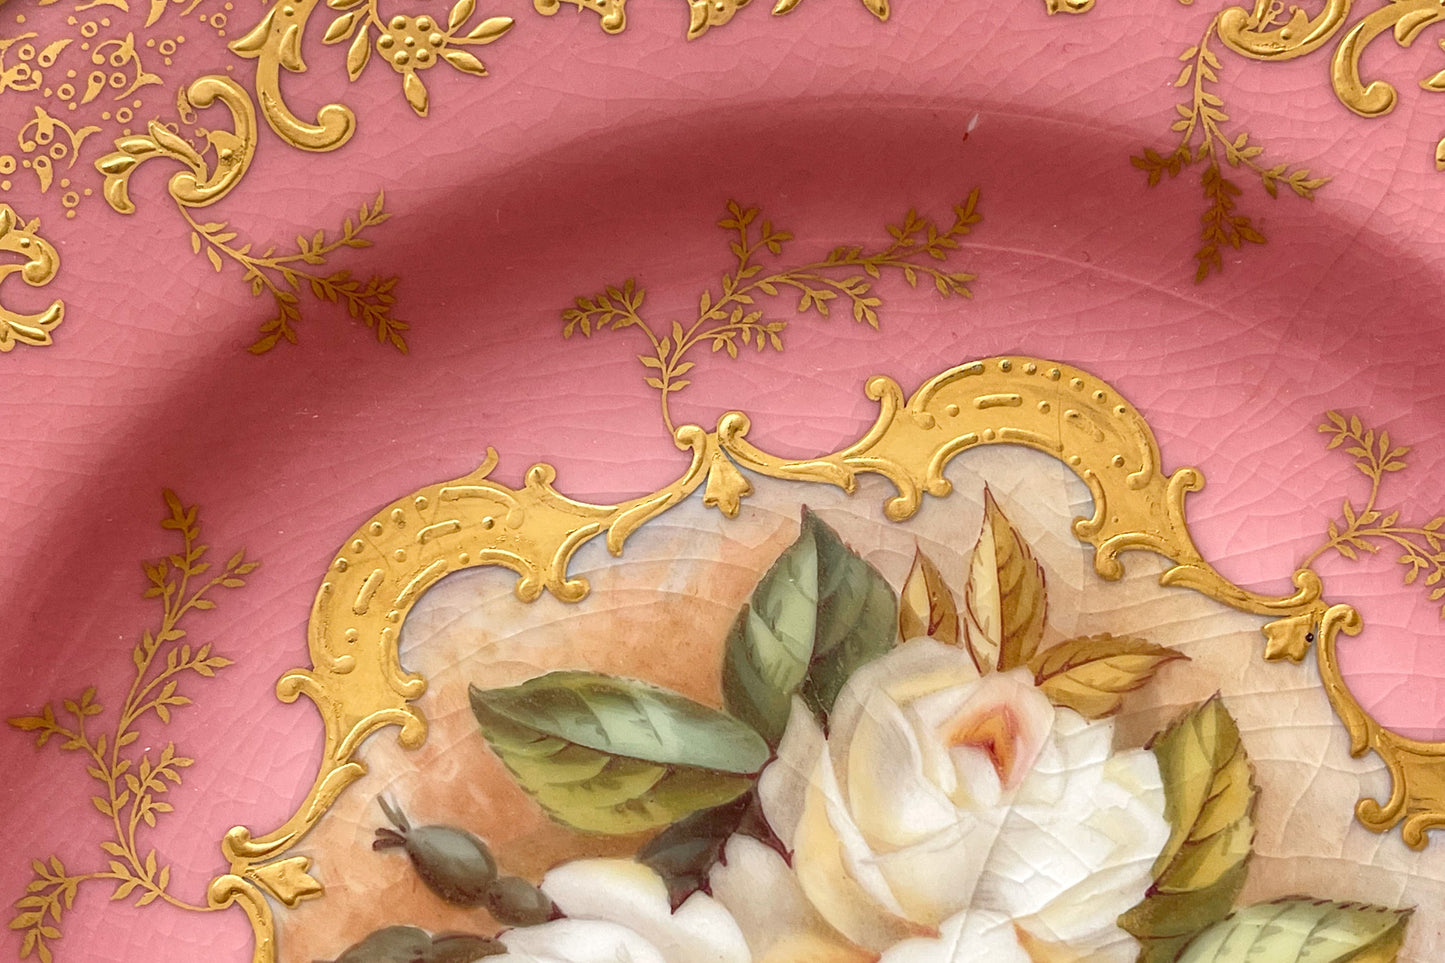 コールポートの美しいアンティークプレート。豪華な金彩にハンドペイントで描かれた薔薇のお花が大変美しいお品です。